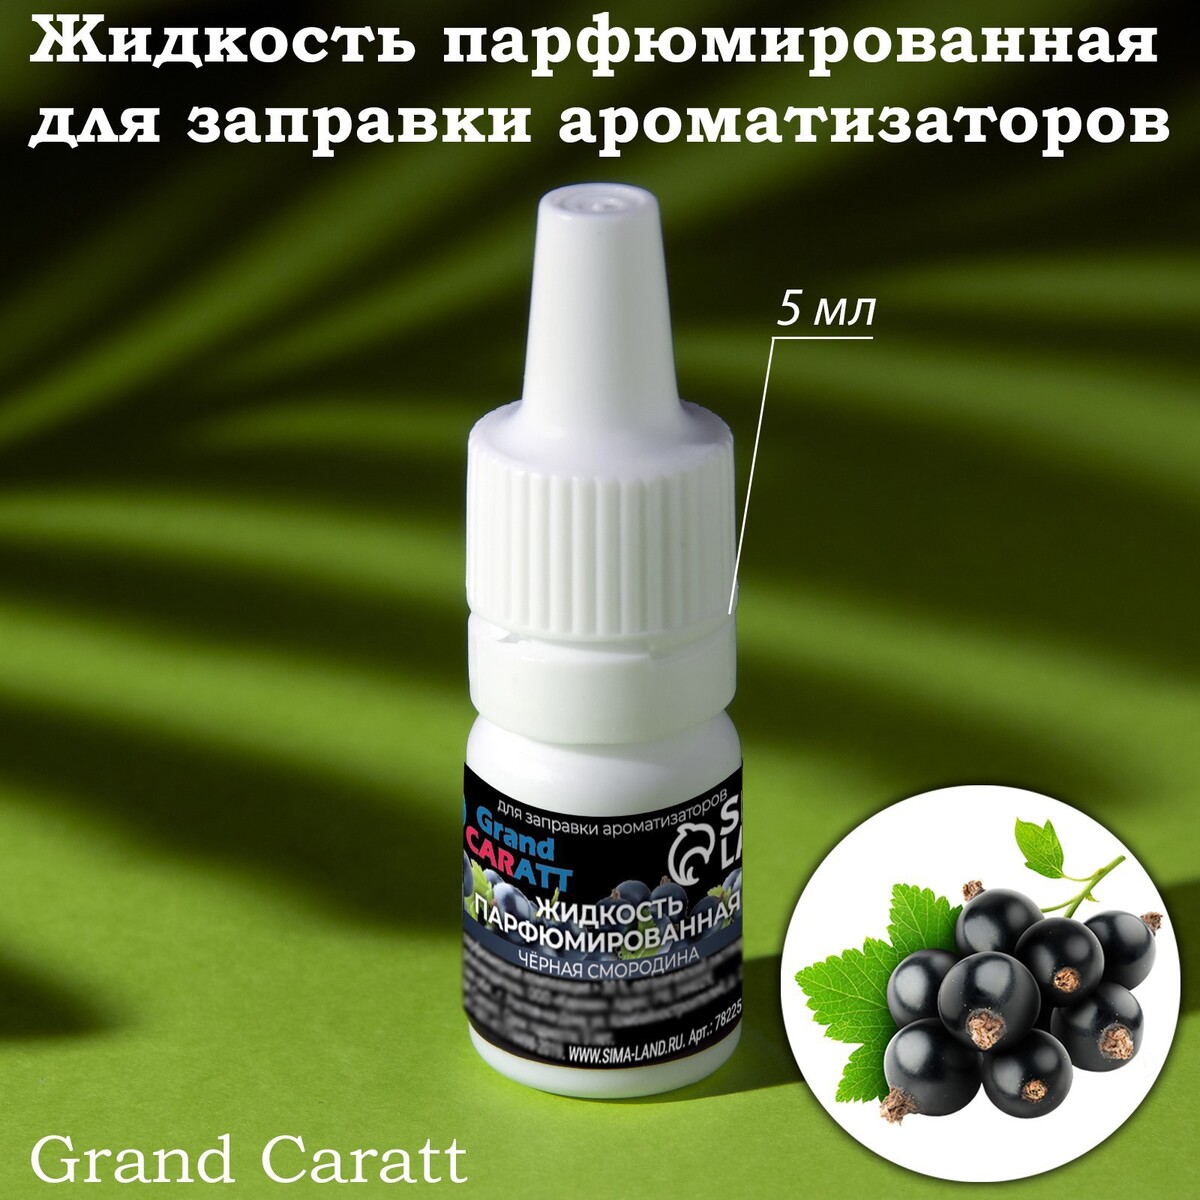 Жидкость парфюмированная grand caratt, для заправки ароматизаторов, черная смородина, 5 мл жидкость парфюмированная grand caratt для заправки ароматизаторов кофе 5 мл